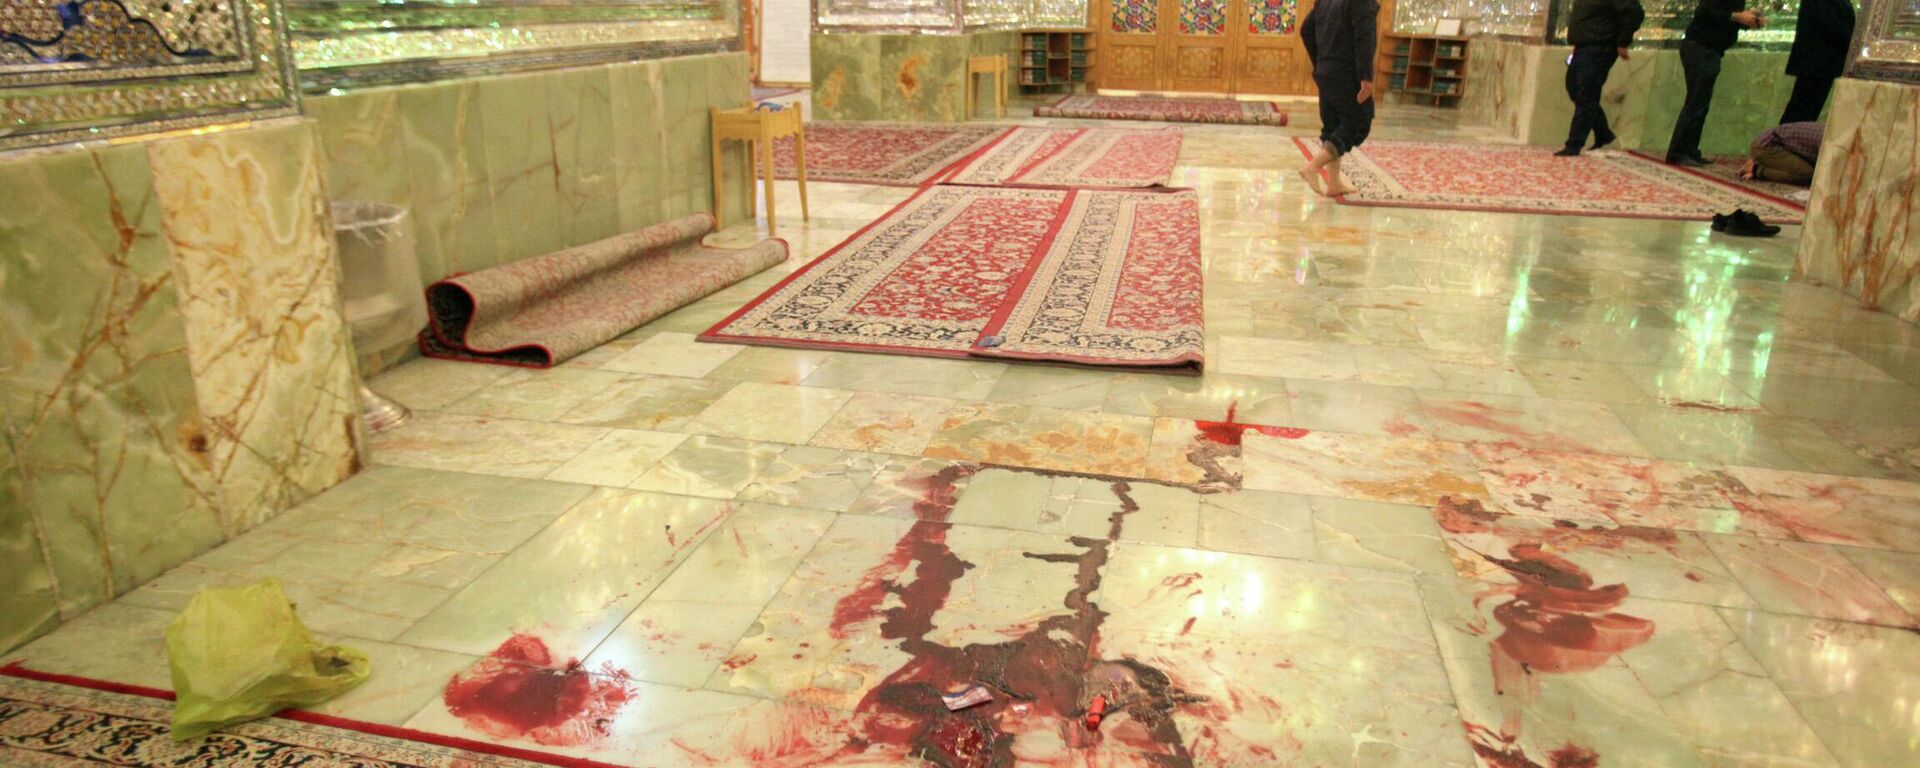 Manchas de sangre en el suelo de la mezquita de Shah Cheragh, en Irán, tras el atentado del 26 de octubre de 2022 - Sputnik Mundo, 1920, 29.10.2022